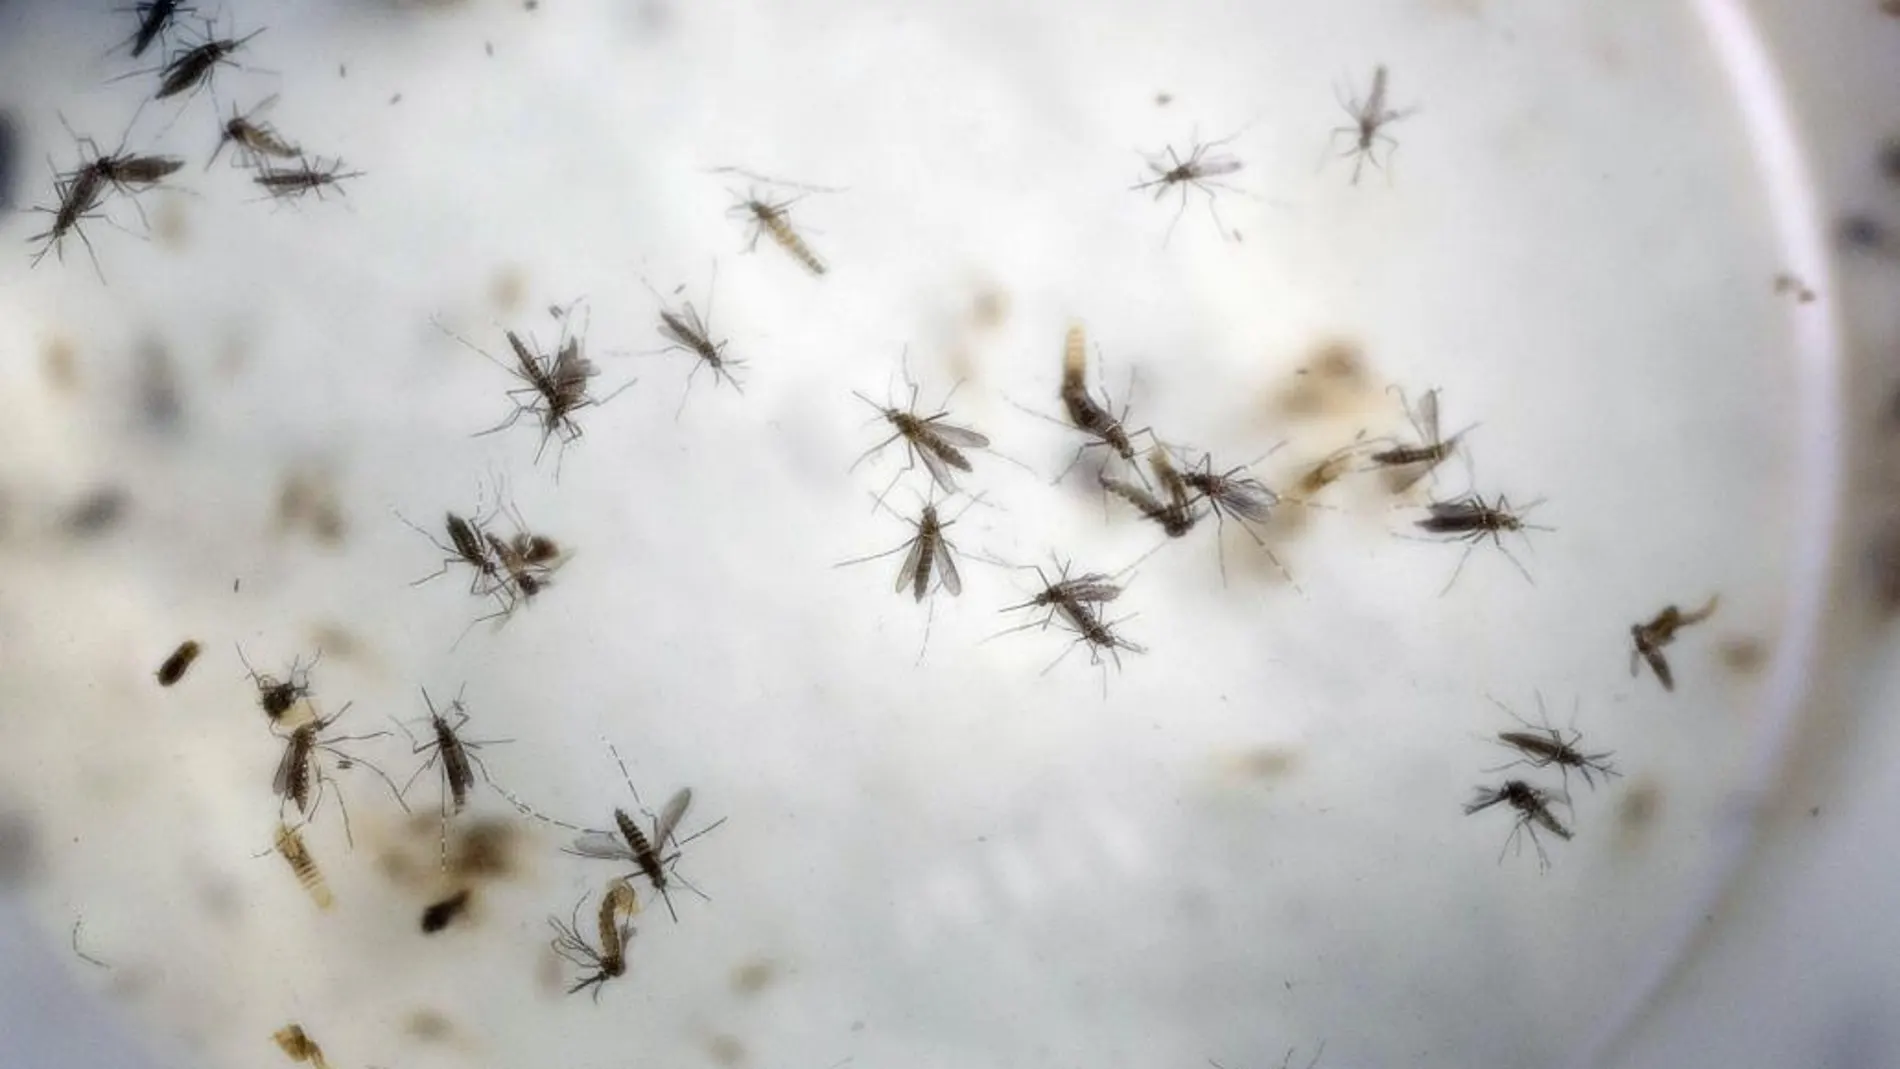 OMS calcula que se necesitan 56 millones de dólares para afrontar el zika